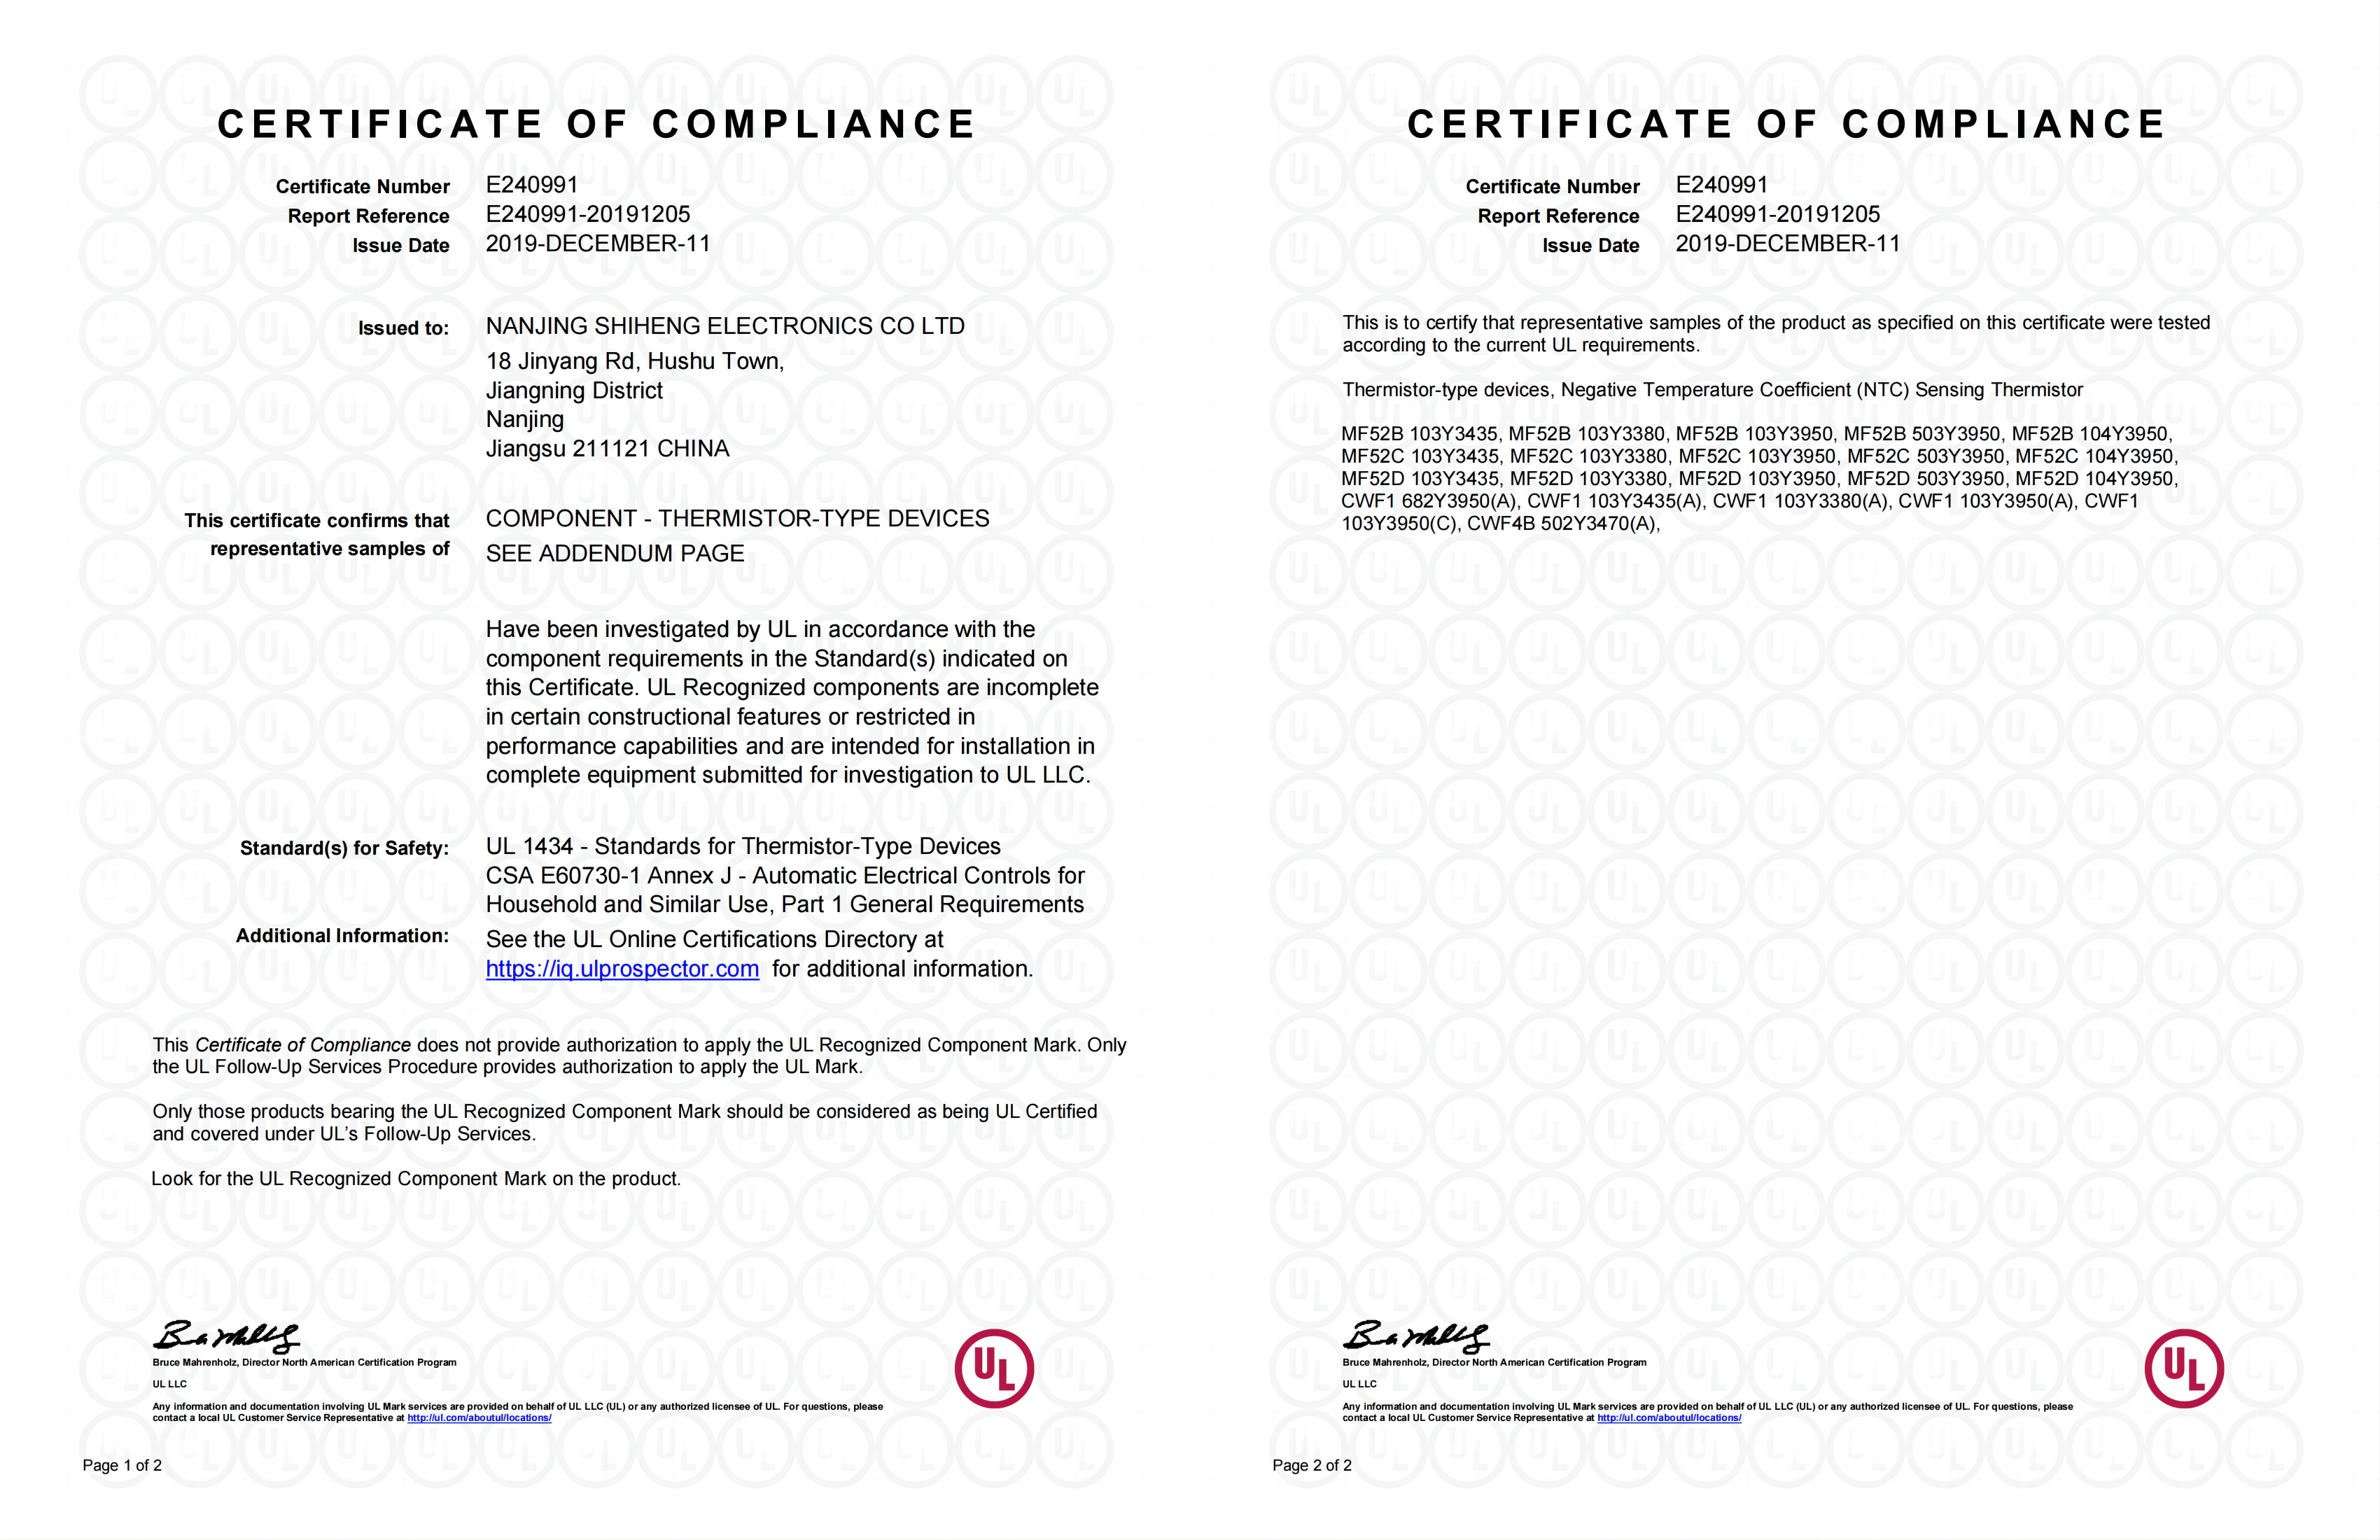 MF52 BCD 、CWF UL Certificate